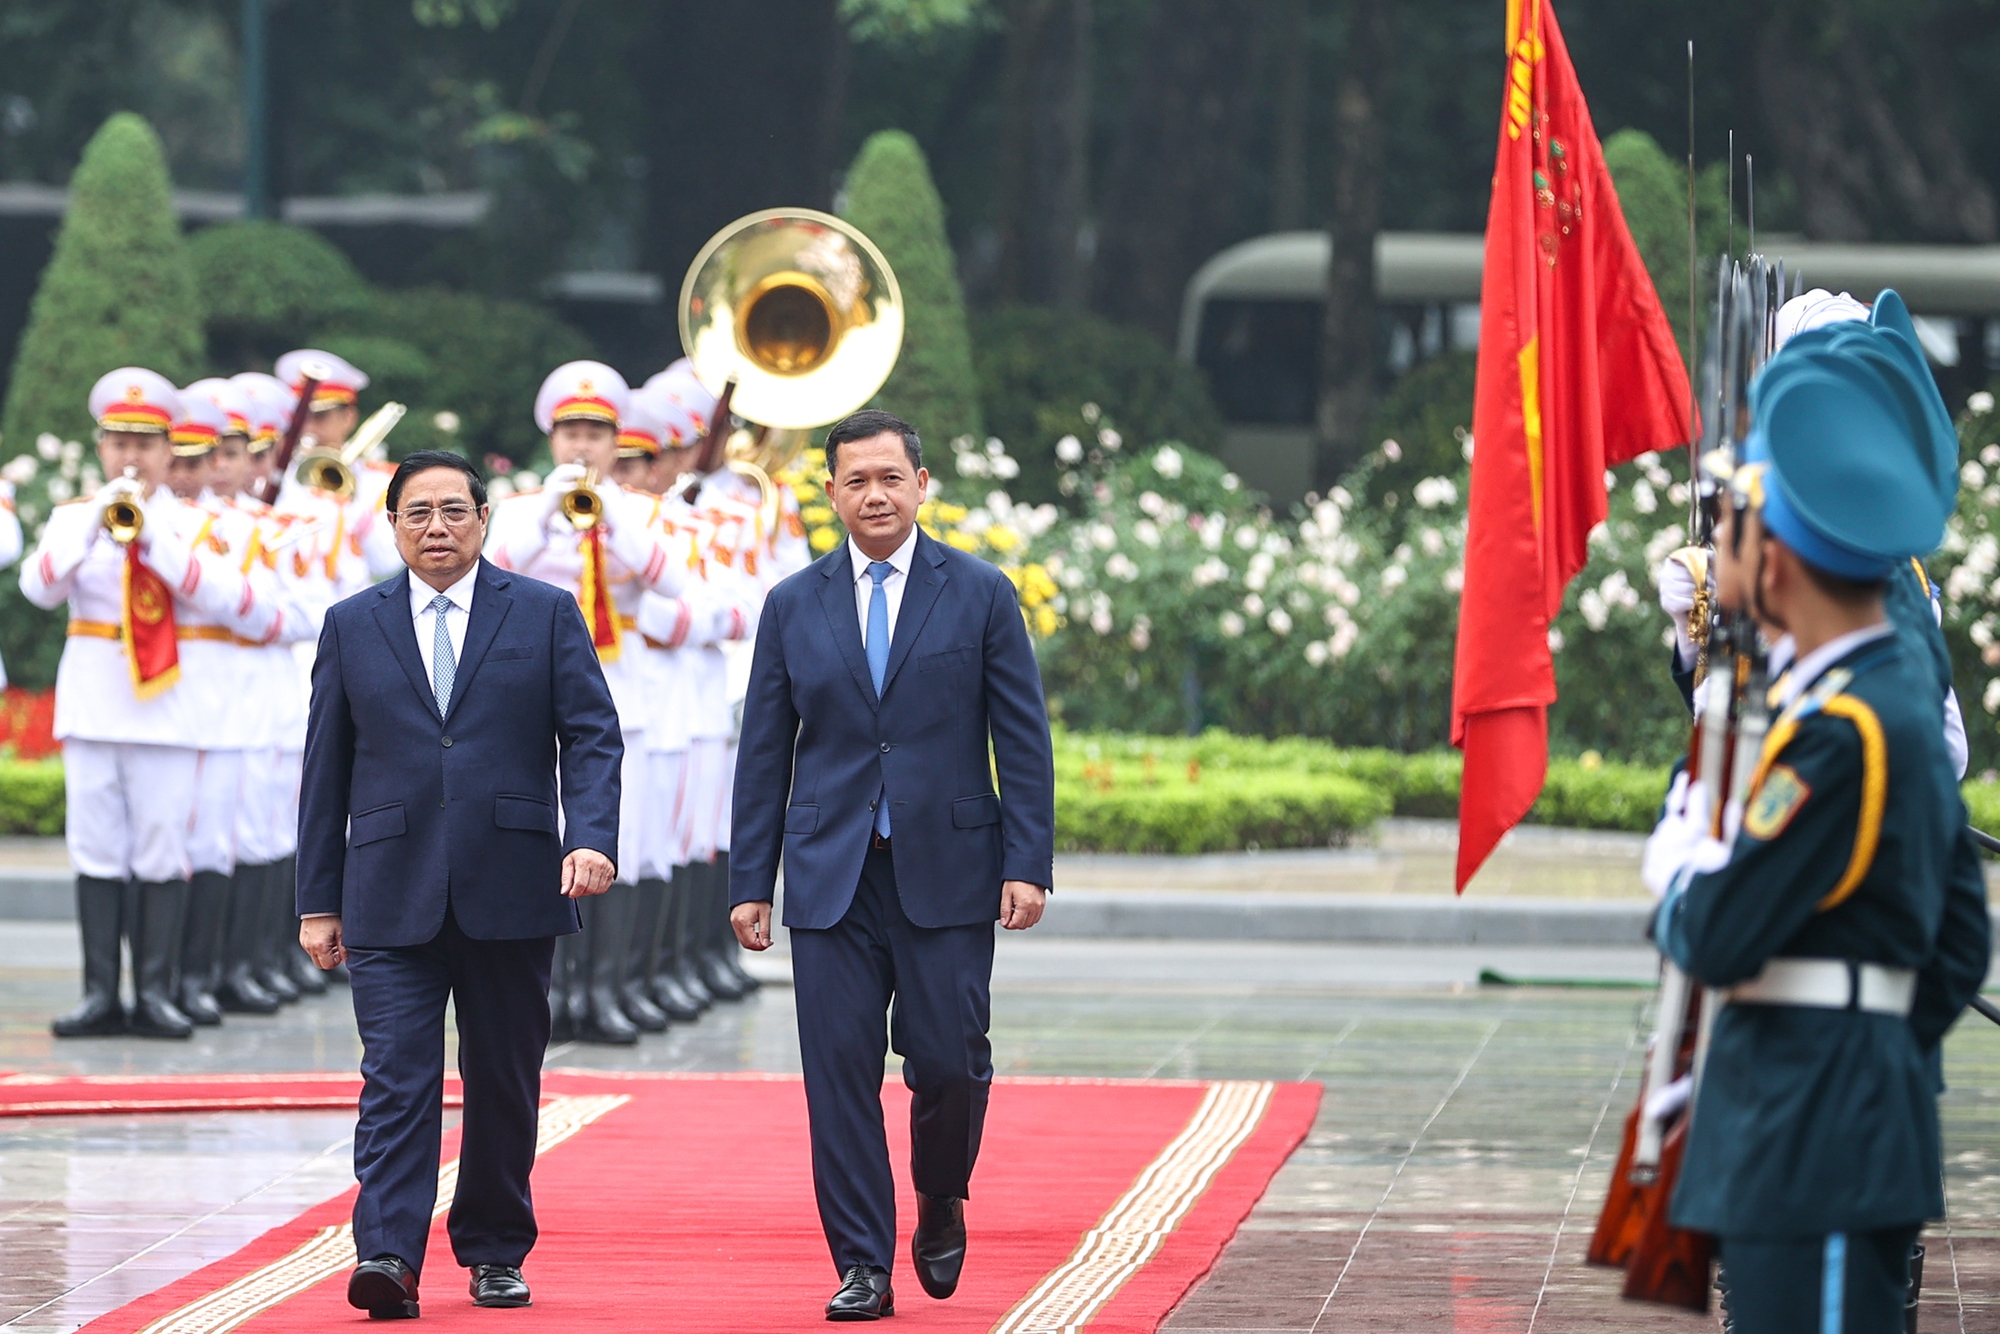 Cận cảnh lễ đón Thủ tướng Campuchia Hun Manet lần đầu thăm Việt Nam - Ảnh 4.